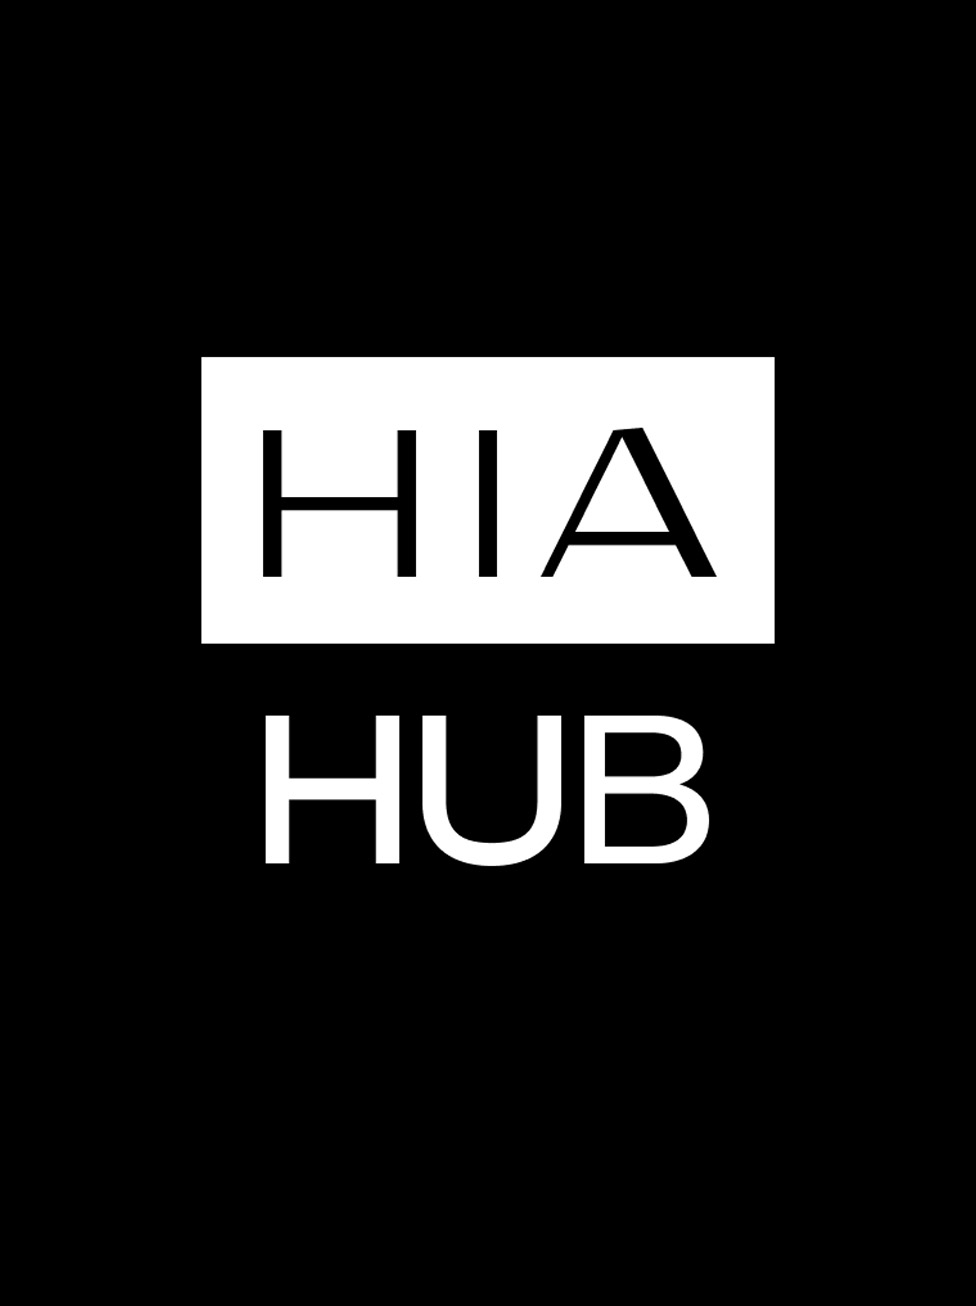 "هي هَبْ" أكبر مؤتمر أزياء وأسلوب حياة في المنطقة يعود بنسخته الثالثة من 3 إلى 7 نوفمبر 2023